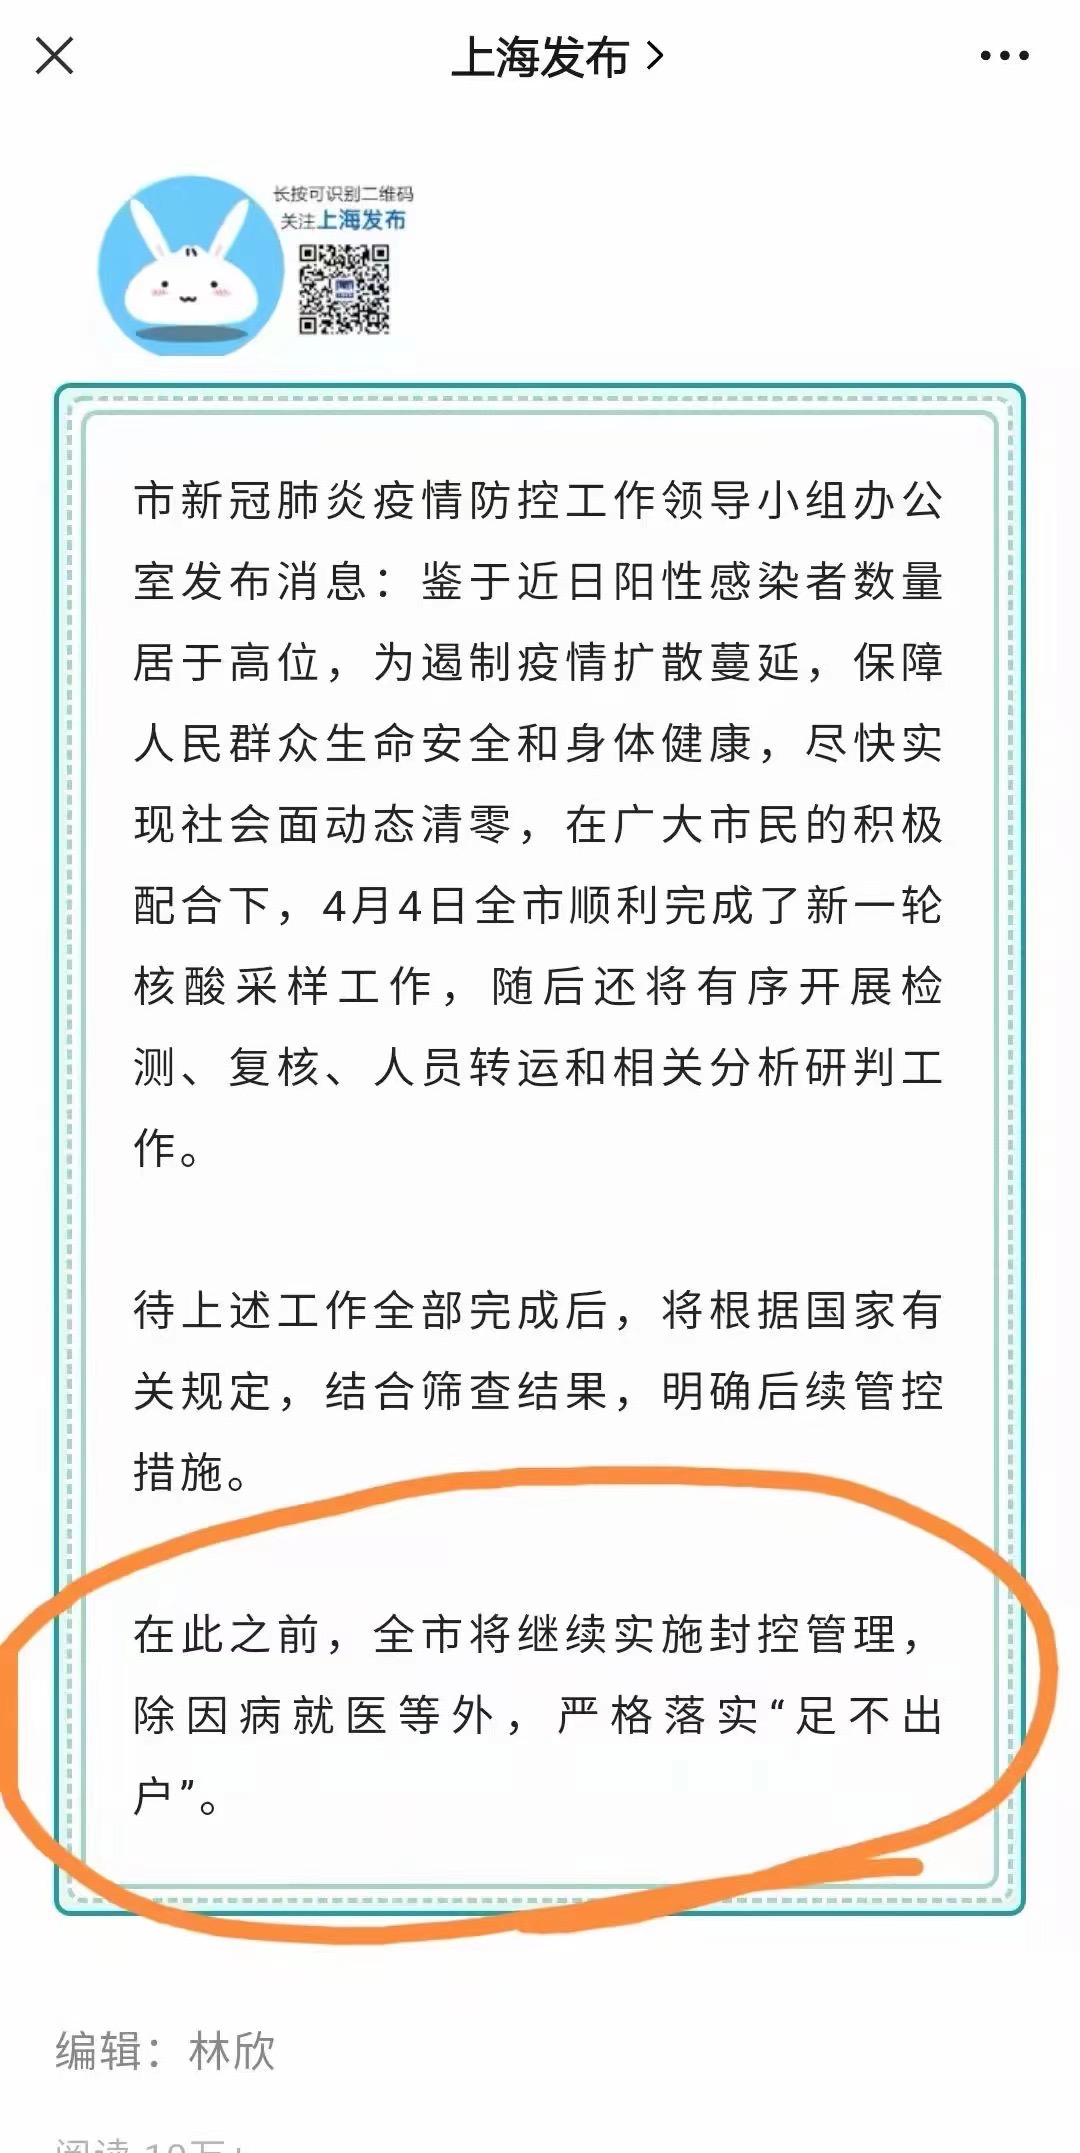 「上海發布」最後一段話明確表示，原定4月5日浦西解封取消，重複浦東一樣動作繼續封城。（網絡圖片）